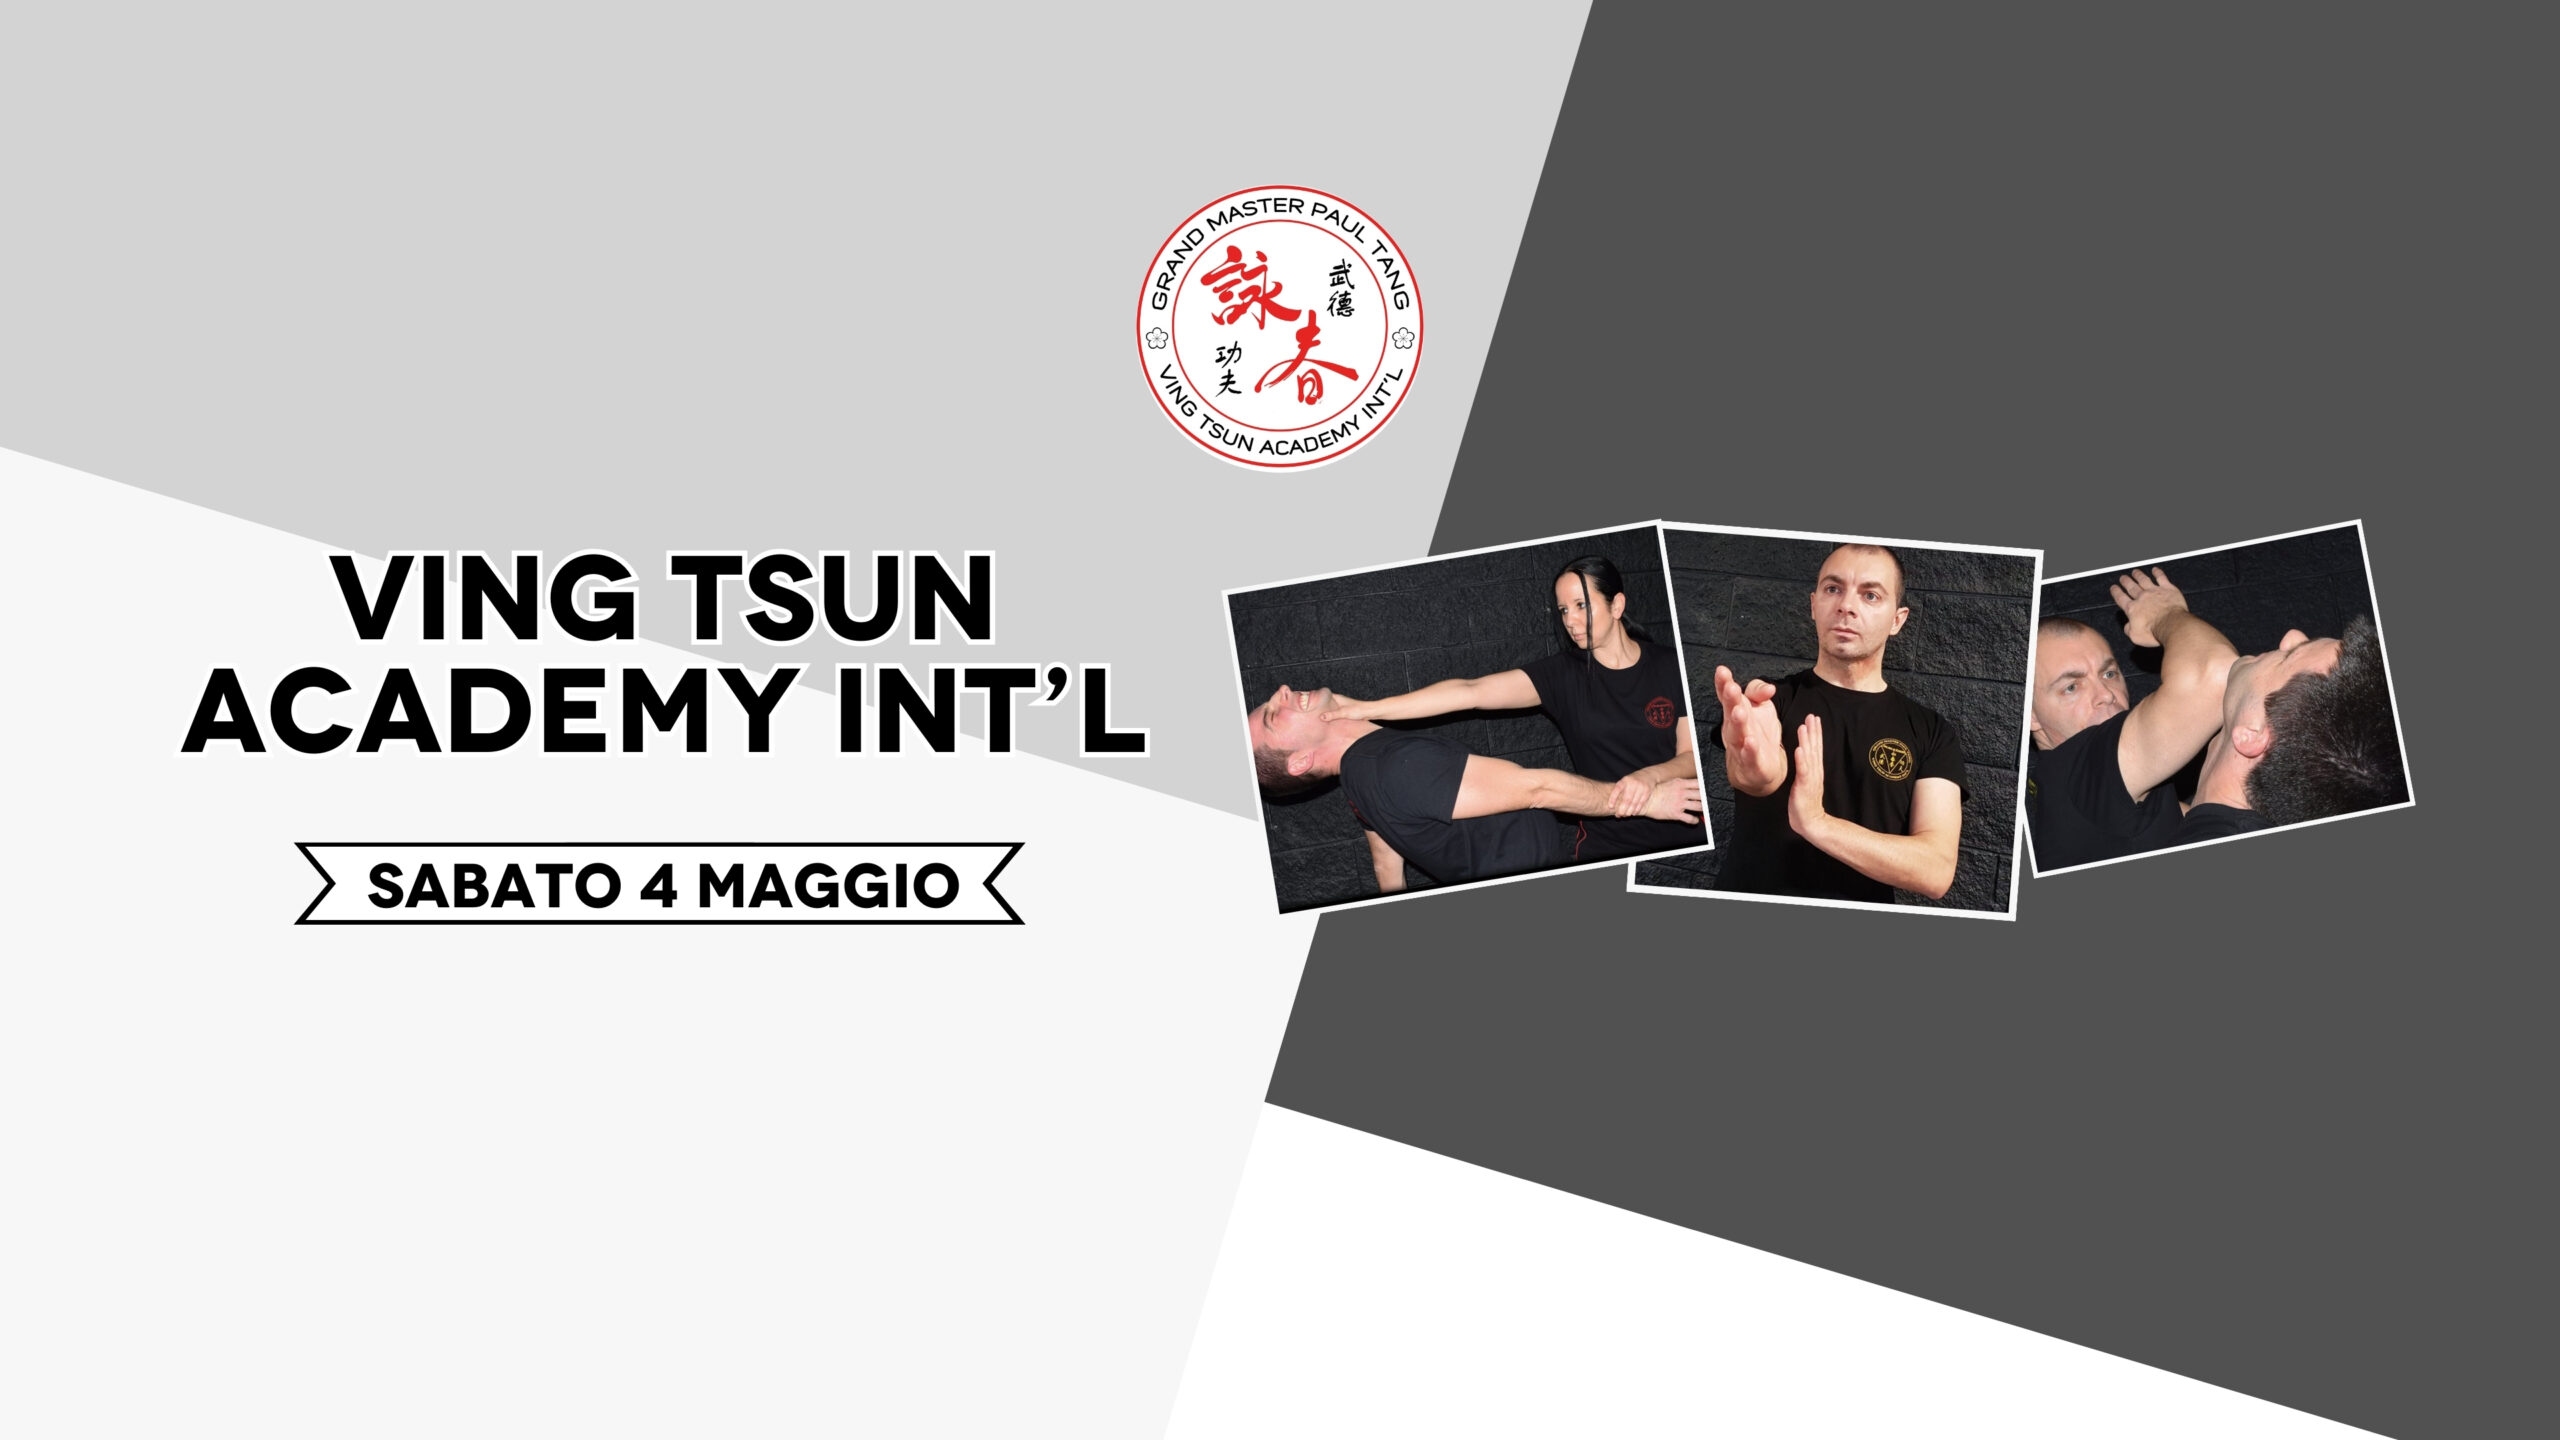 Sabato 04 maggio, Ving Tsun Academy!